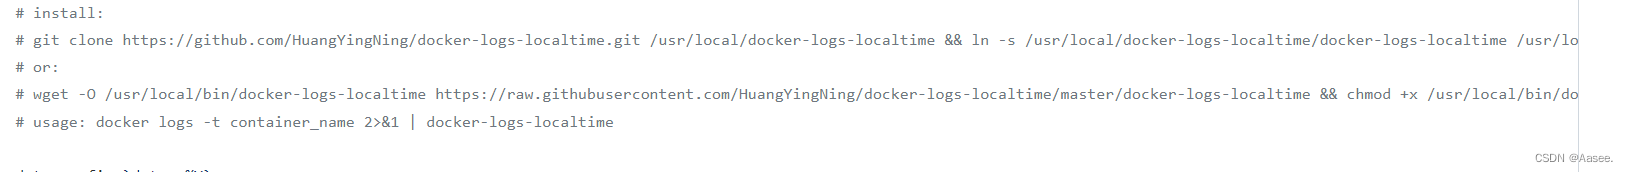 Docker容器日志和宿主机的时间不一致问题解决  | #打卡不停更#-鸿蒙开发者社区